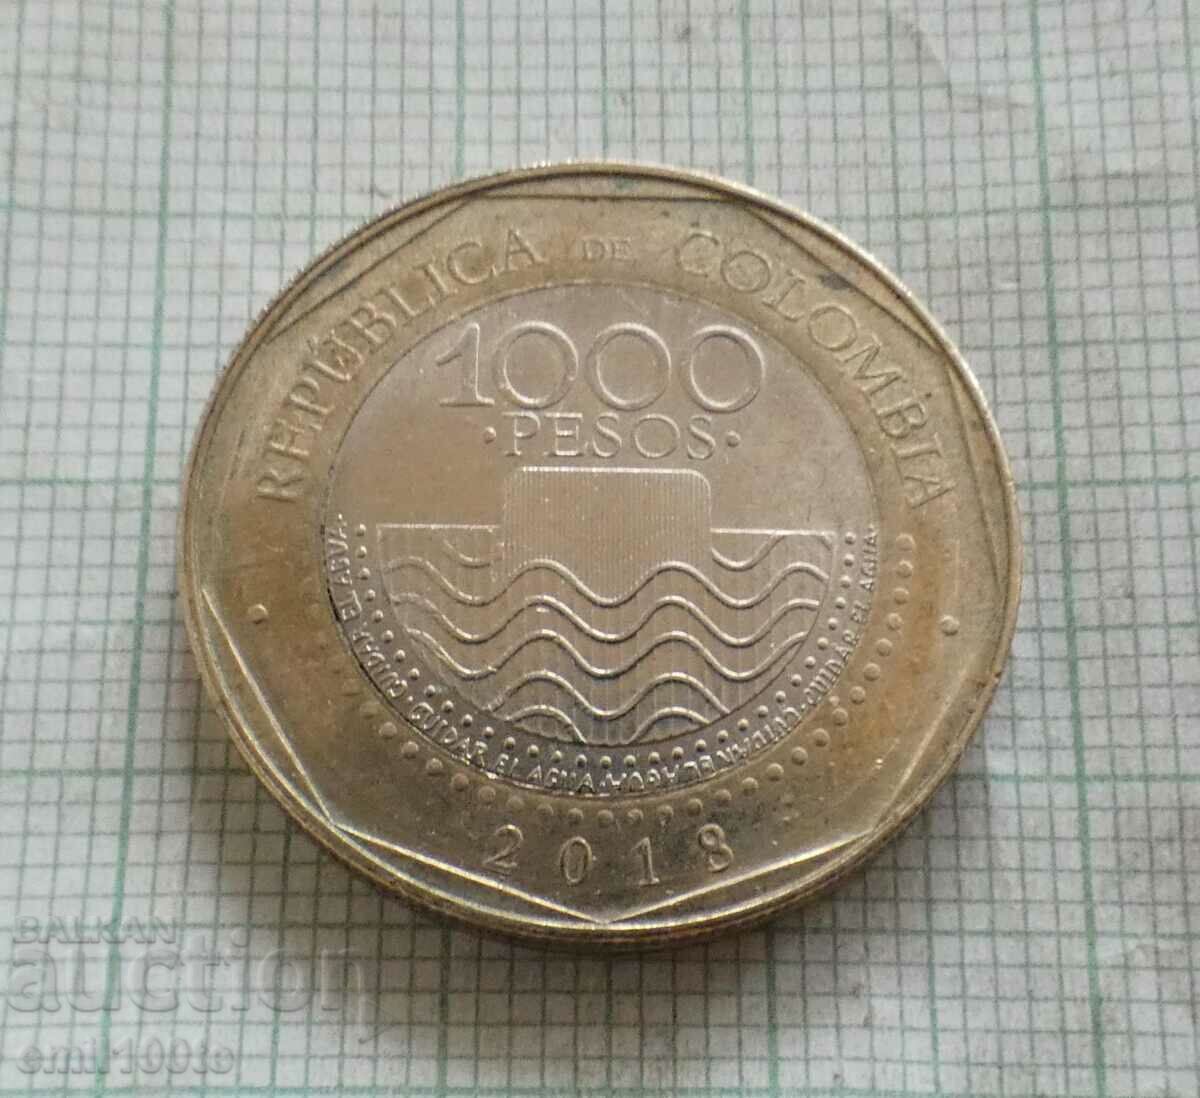 1000 πέσος 2018 Κολομβία